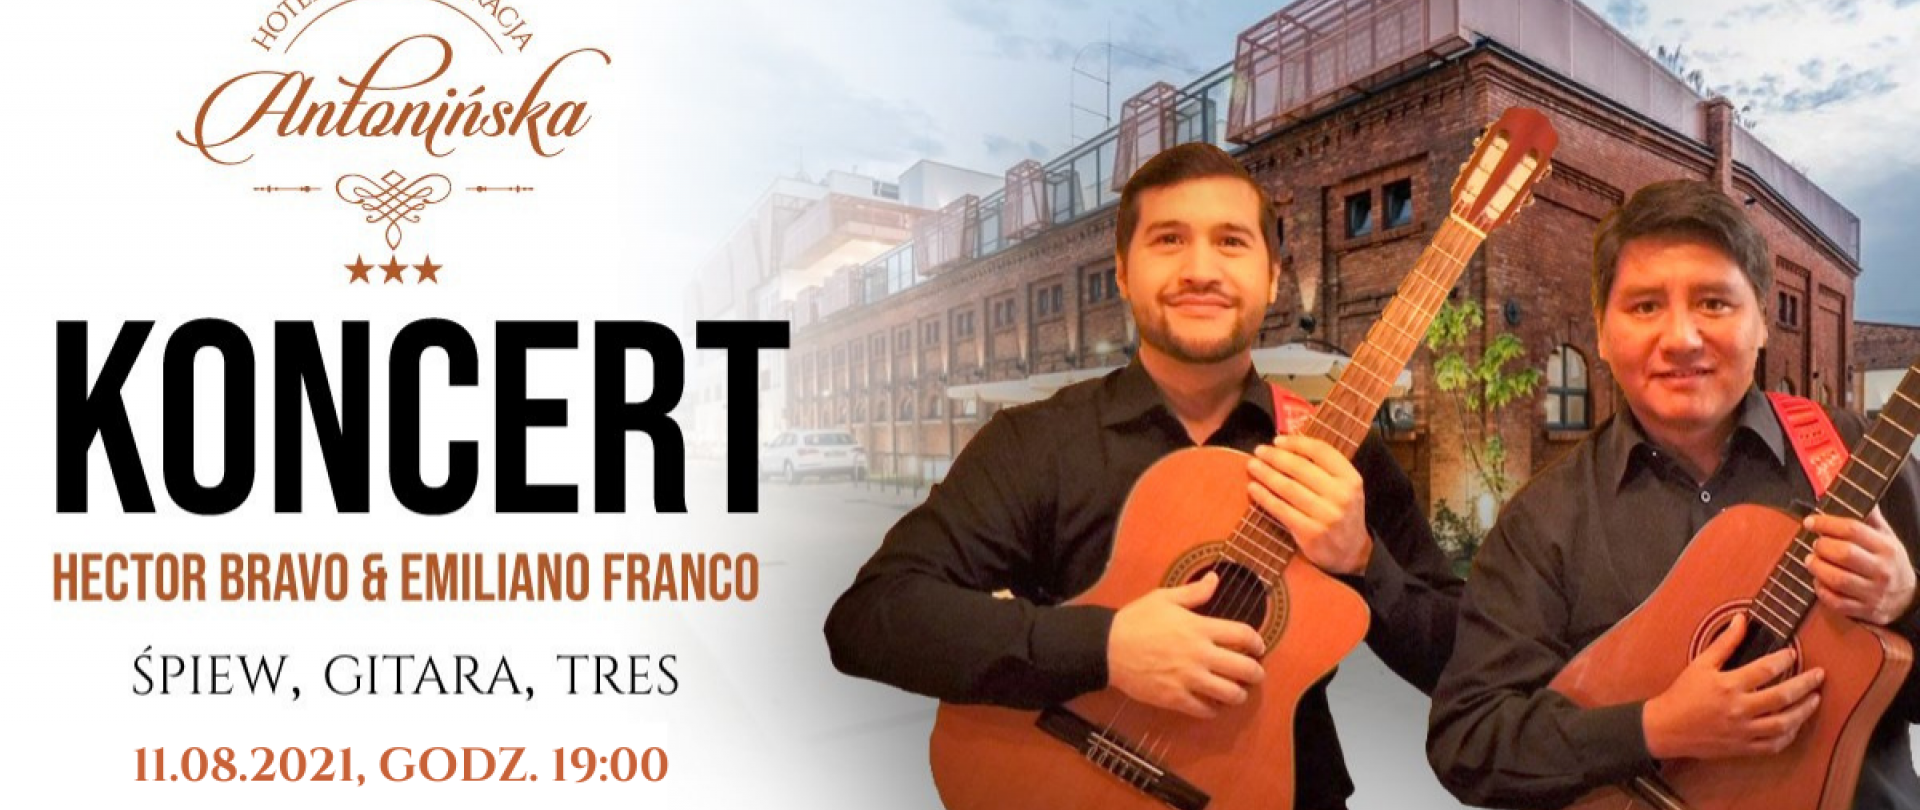 Zaległy, urodzinowy koncert duetu Hector Bravo & Emiliano Franco!